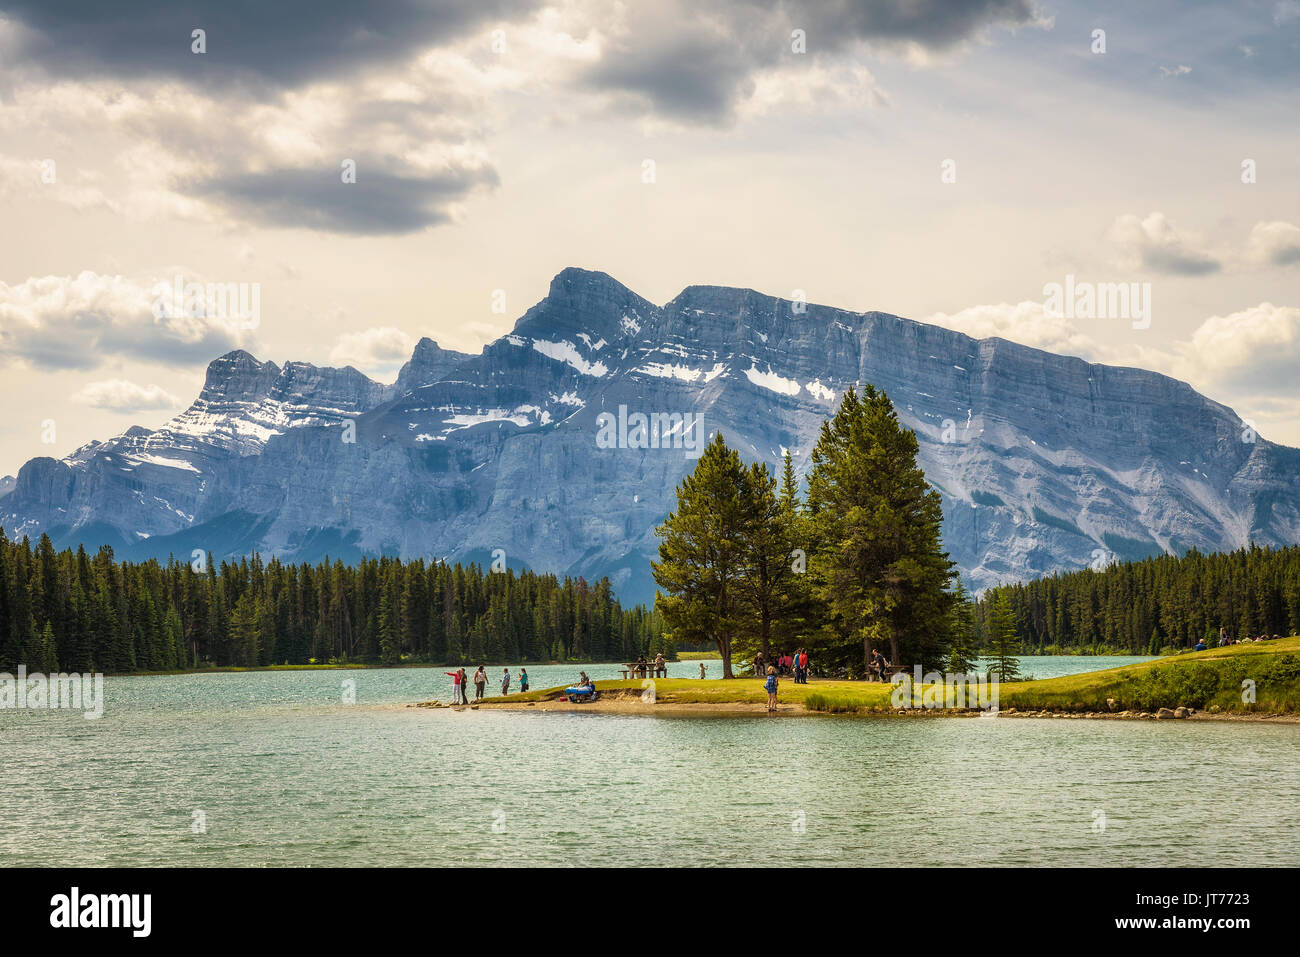 Deux JACK LAKE, ALBERTA, CANADA - LE 26 JUIN 2017 : les touristes profitez d'une journée ensoleillée sur le lac Two Jack dans le parc national de Banff avec Mt. Rundle dans le background Banque D'Images